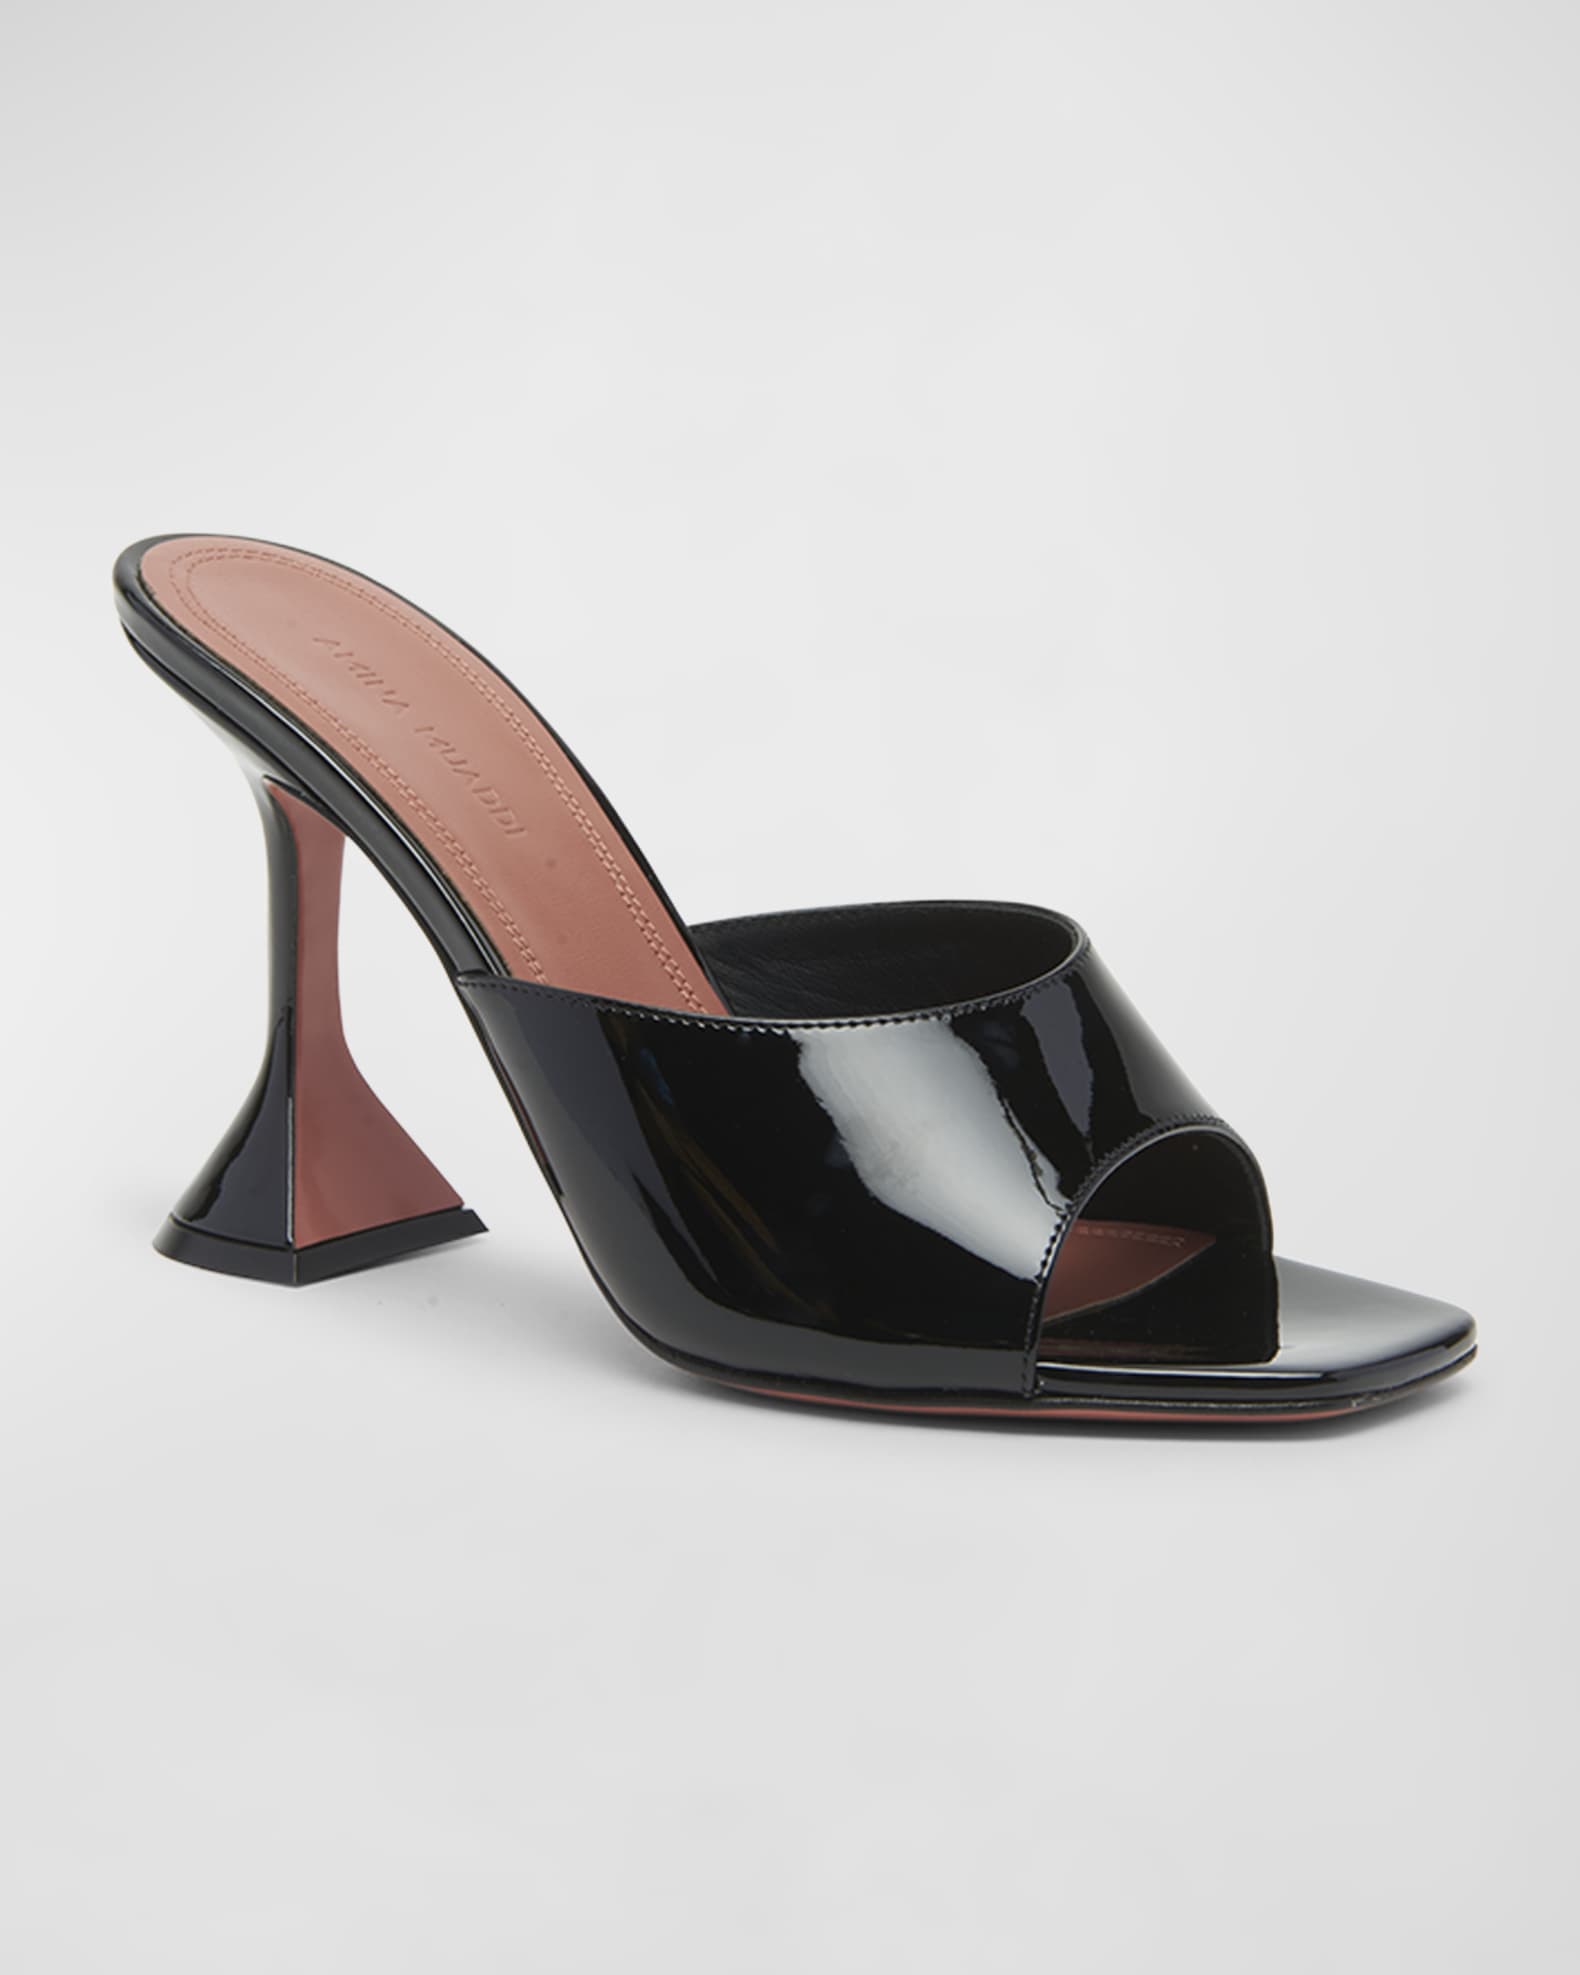 Amina Muaddi Lupita Patent Mule Sandals | Neiman Marcus